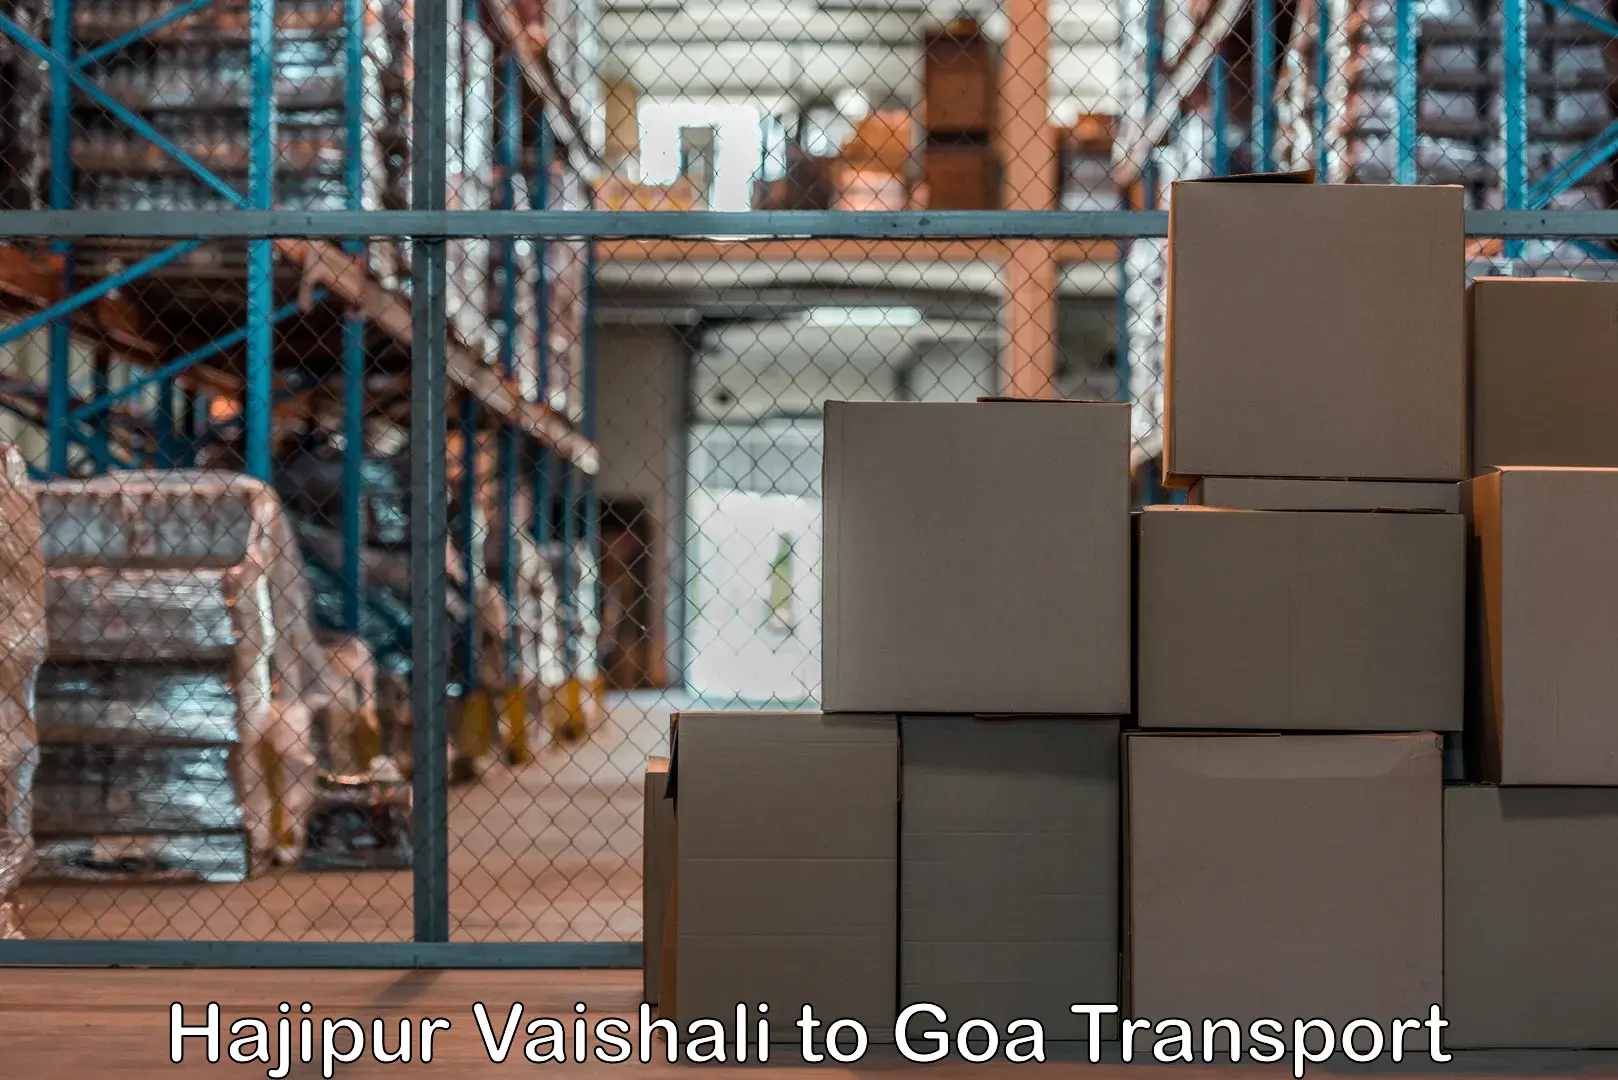 Daily parcel service transport Hajipur Vaishali to Margao